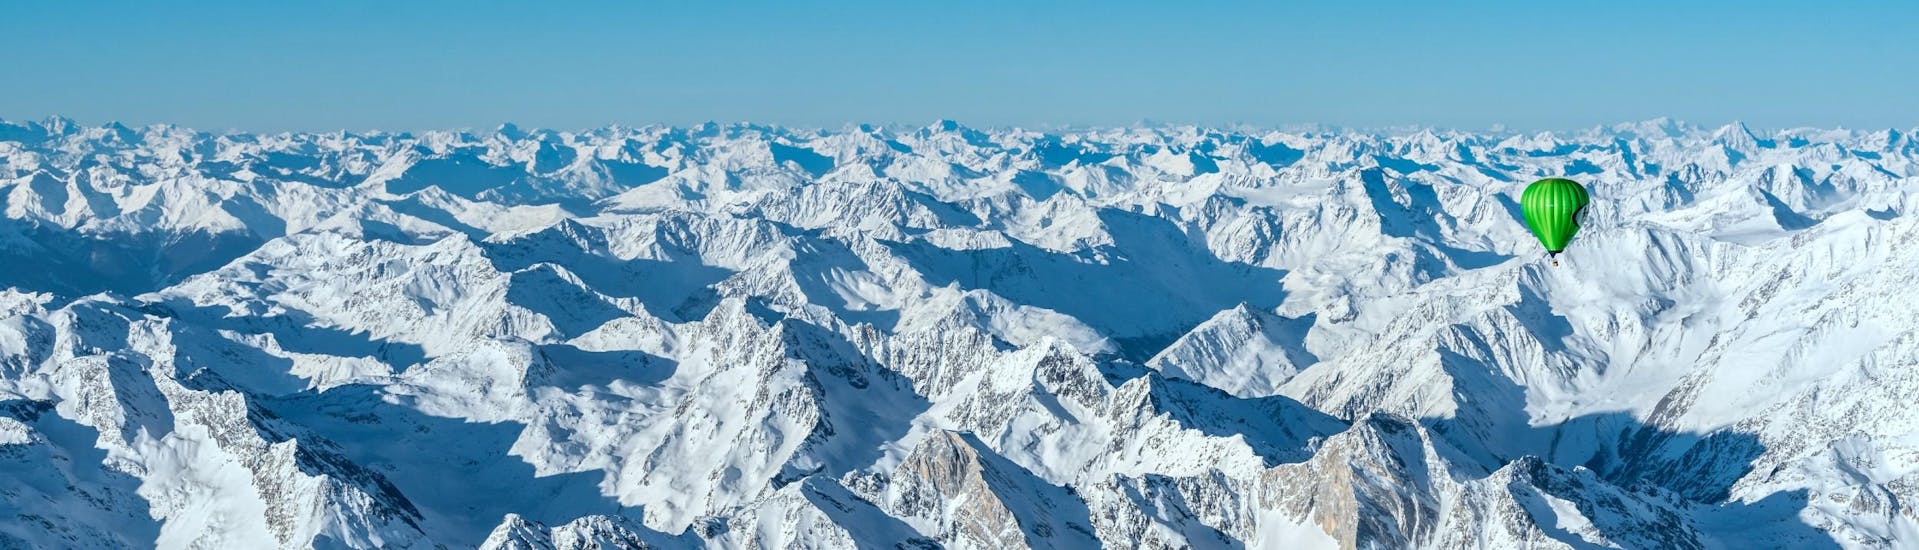 Traversata delle Alpi in Mongolfiera SOLO DURANTE L'INVERNO.